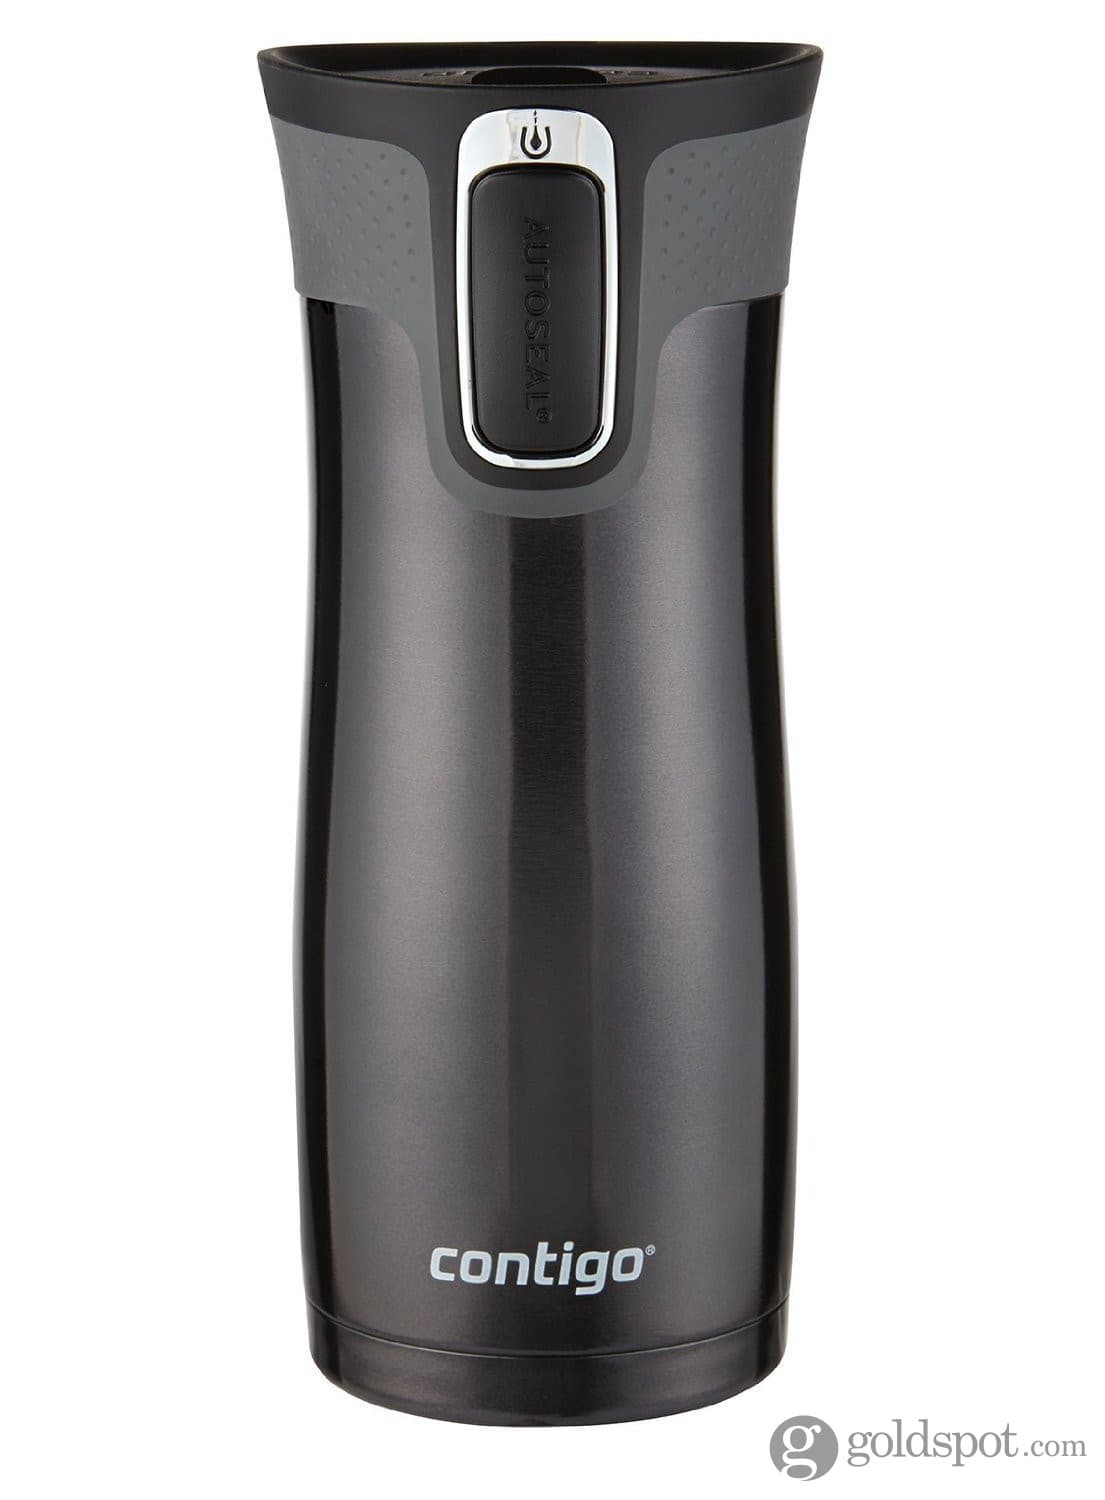 Contigo Autoseal Travel Mug Stainless Steel Vacuum Insulated Tumbler - 2  Pack (Black)